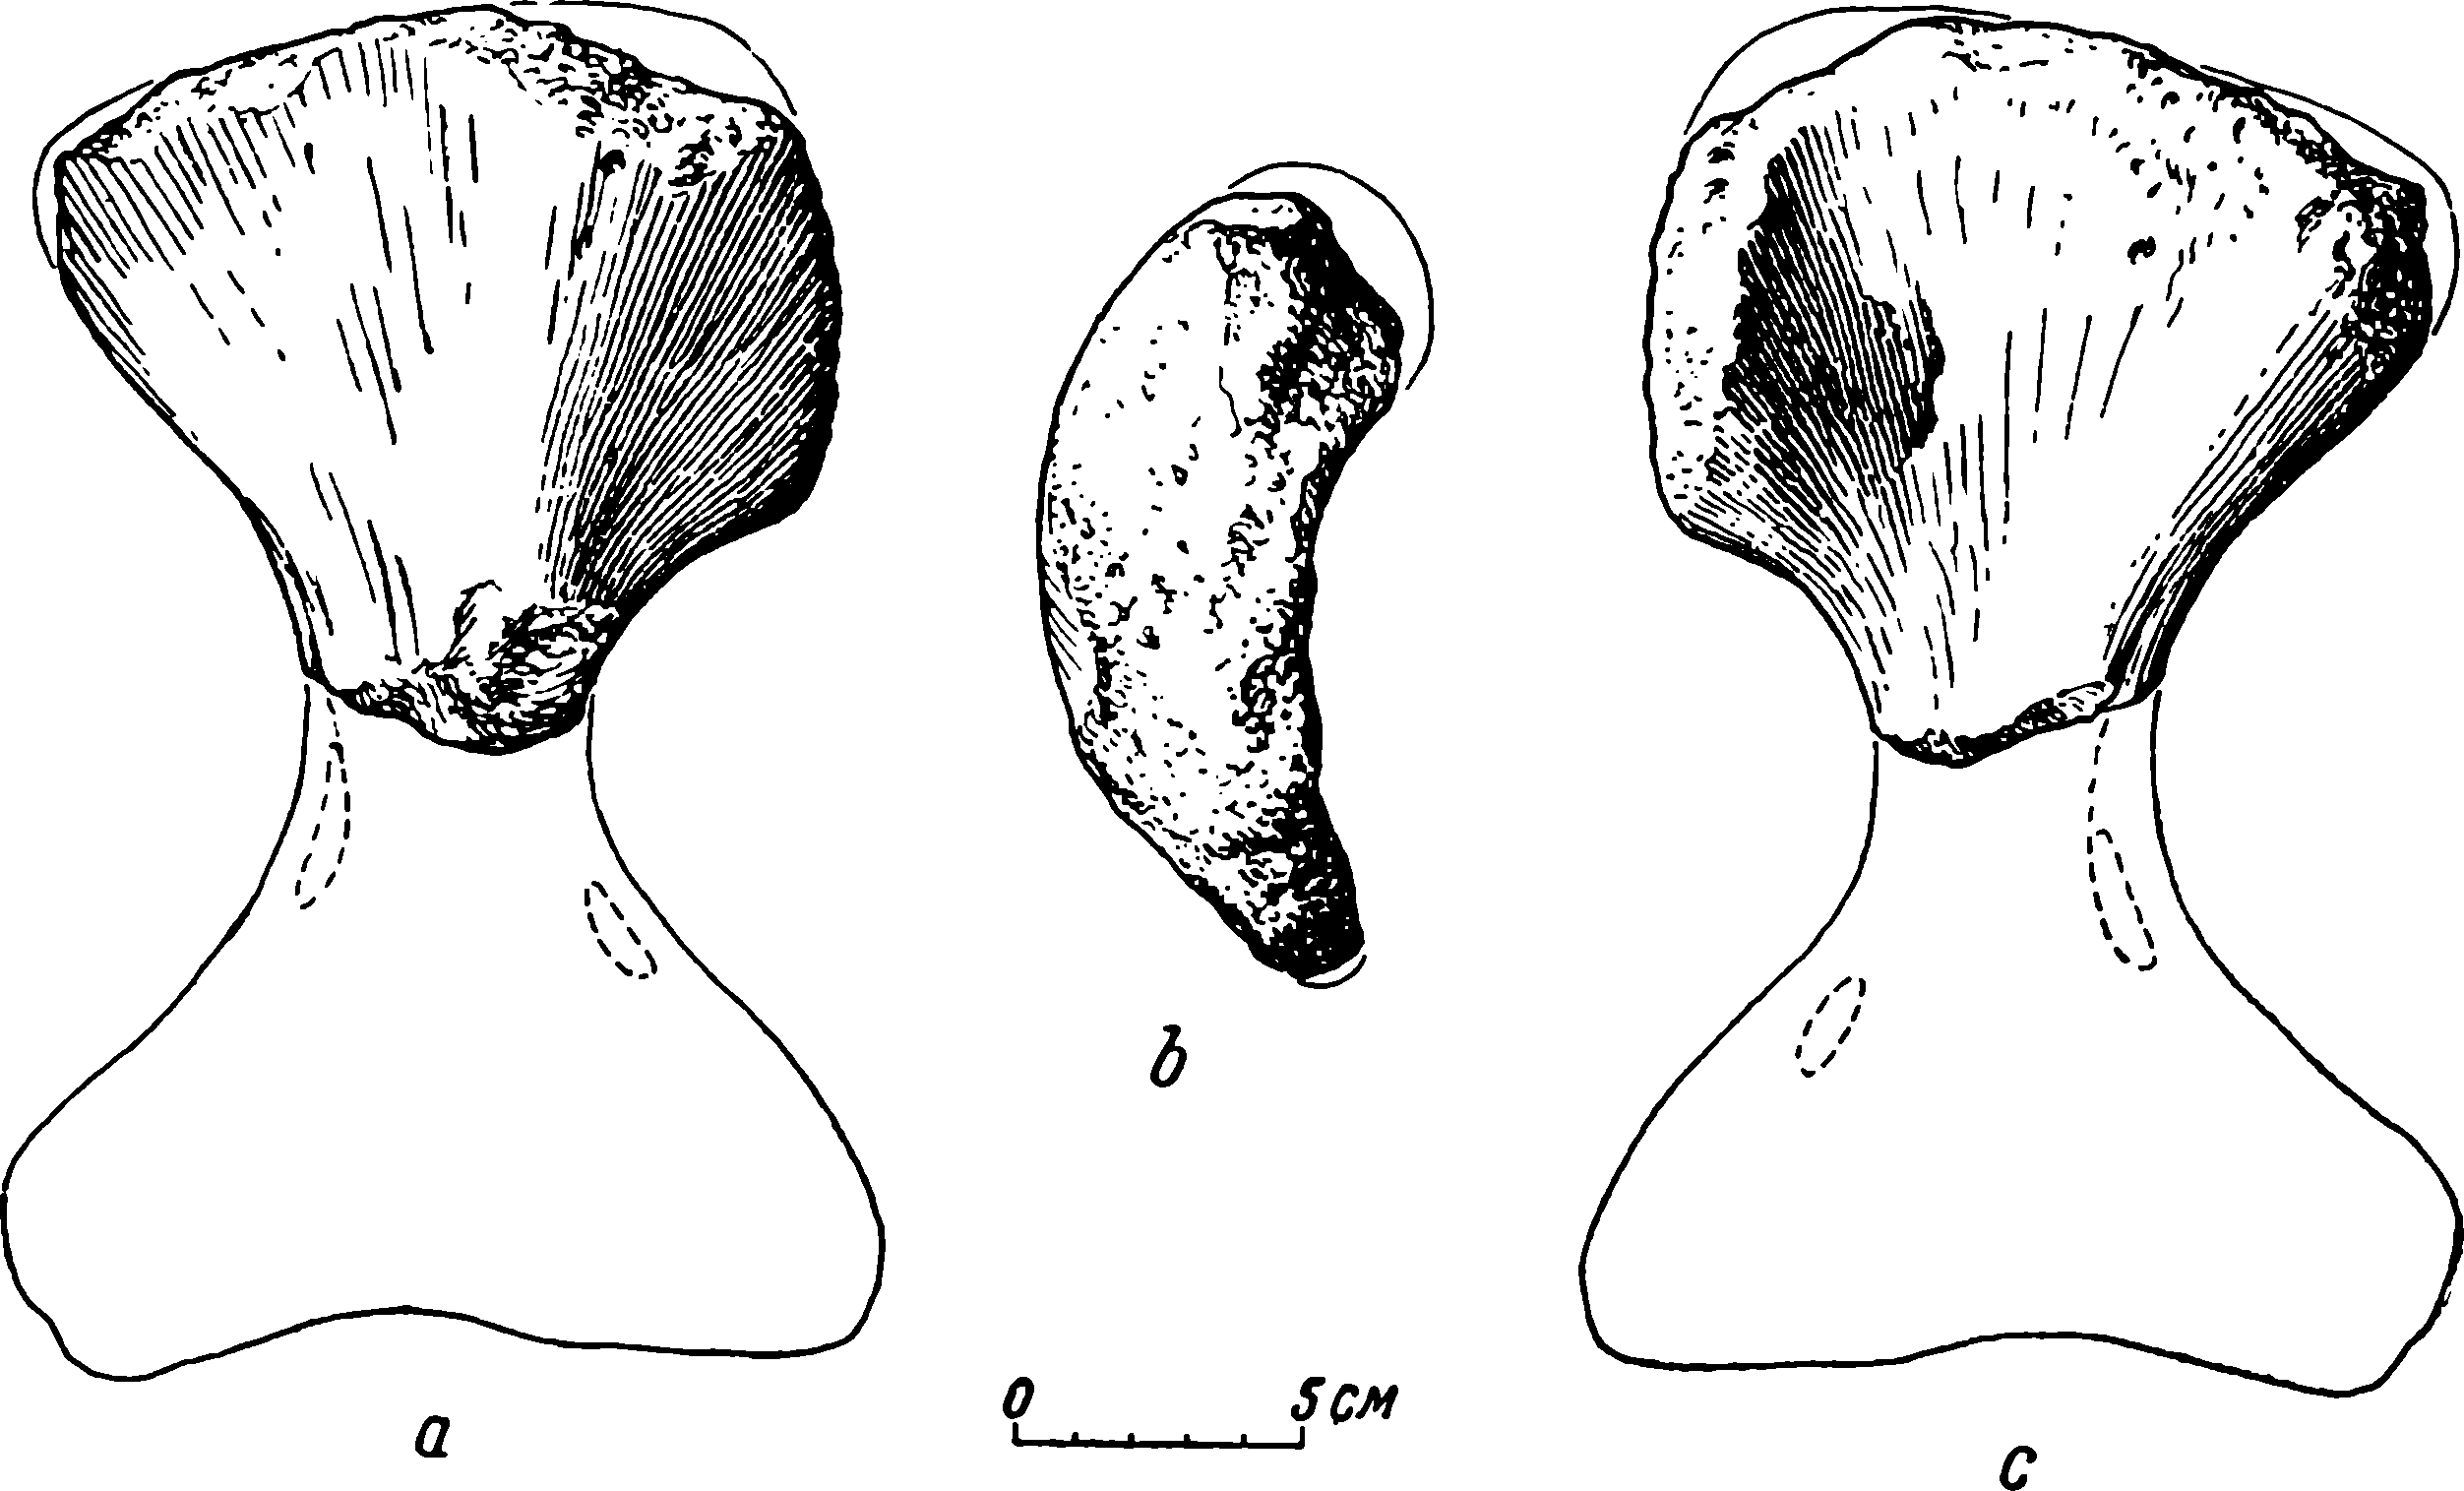 Рис. 39. Brithopus ponderus sp. nov. Правая плечевая кость (humerus) ЛГМ/ЧМП № 41. a — задне-верхняя сторона; b — вид сверху, с головки плеча; c — передне-нижняя сторона.